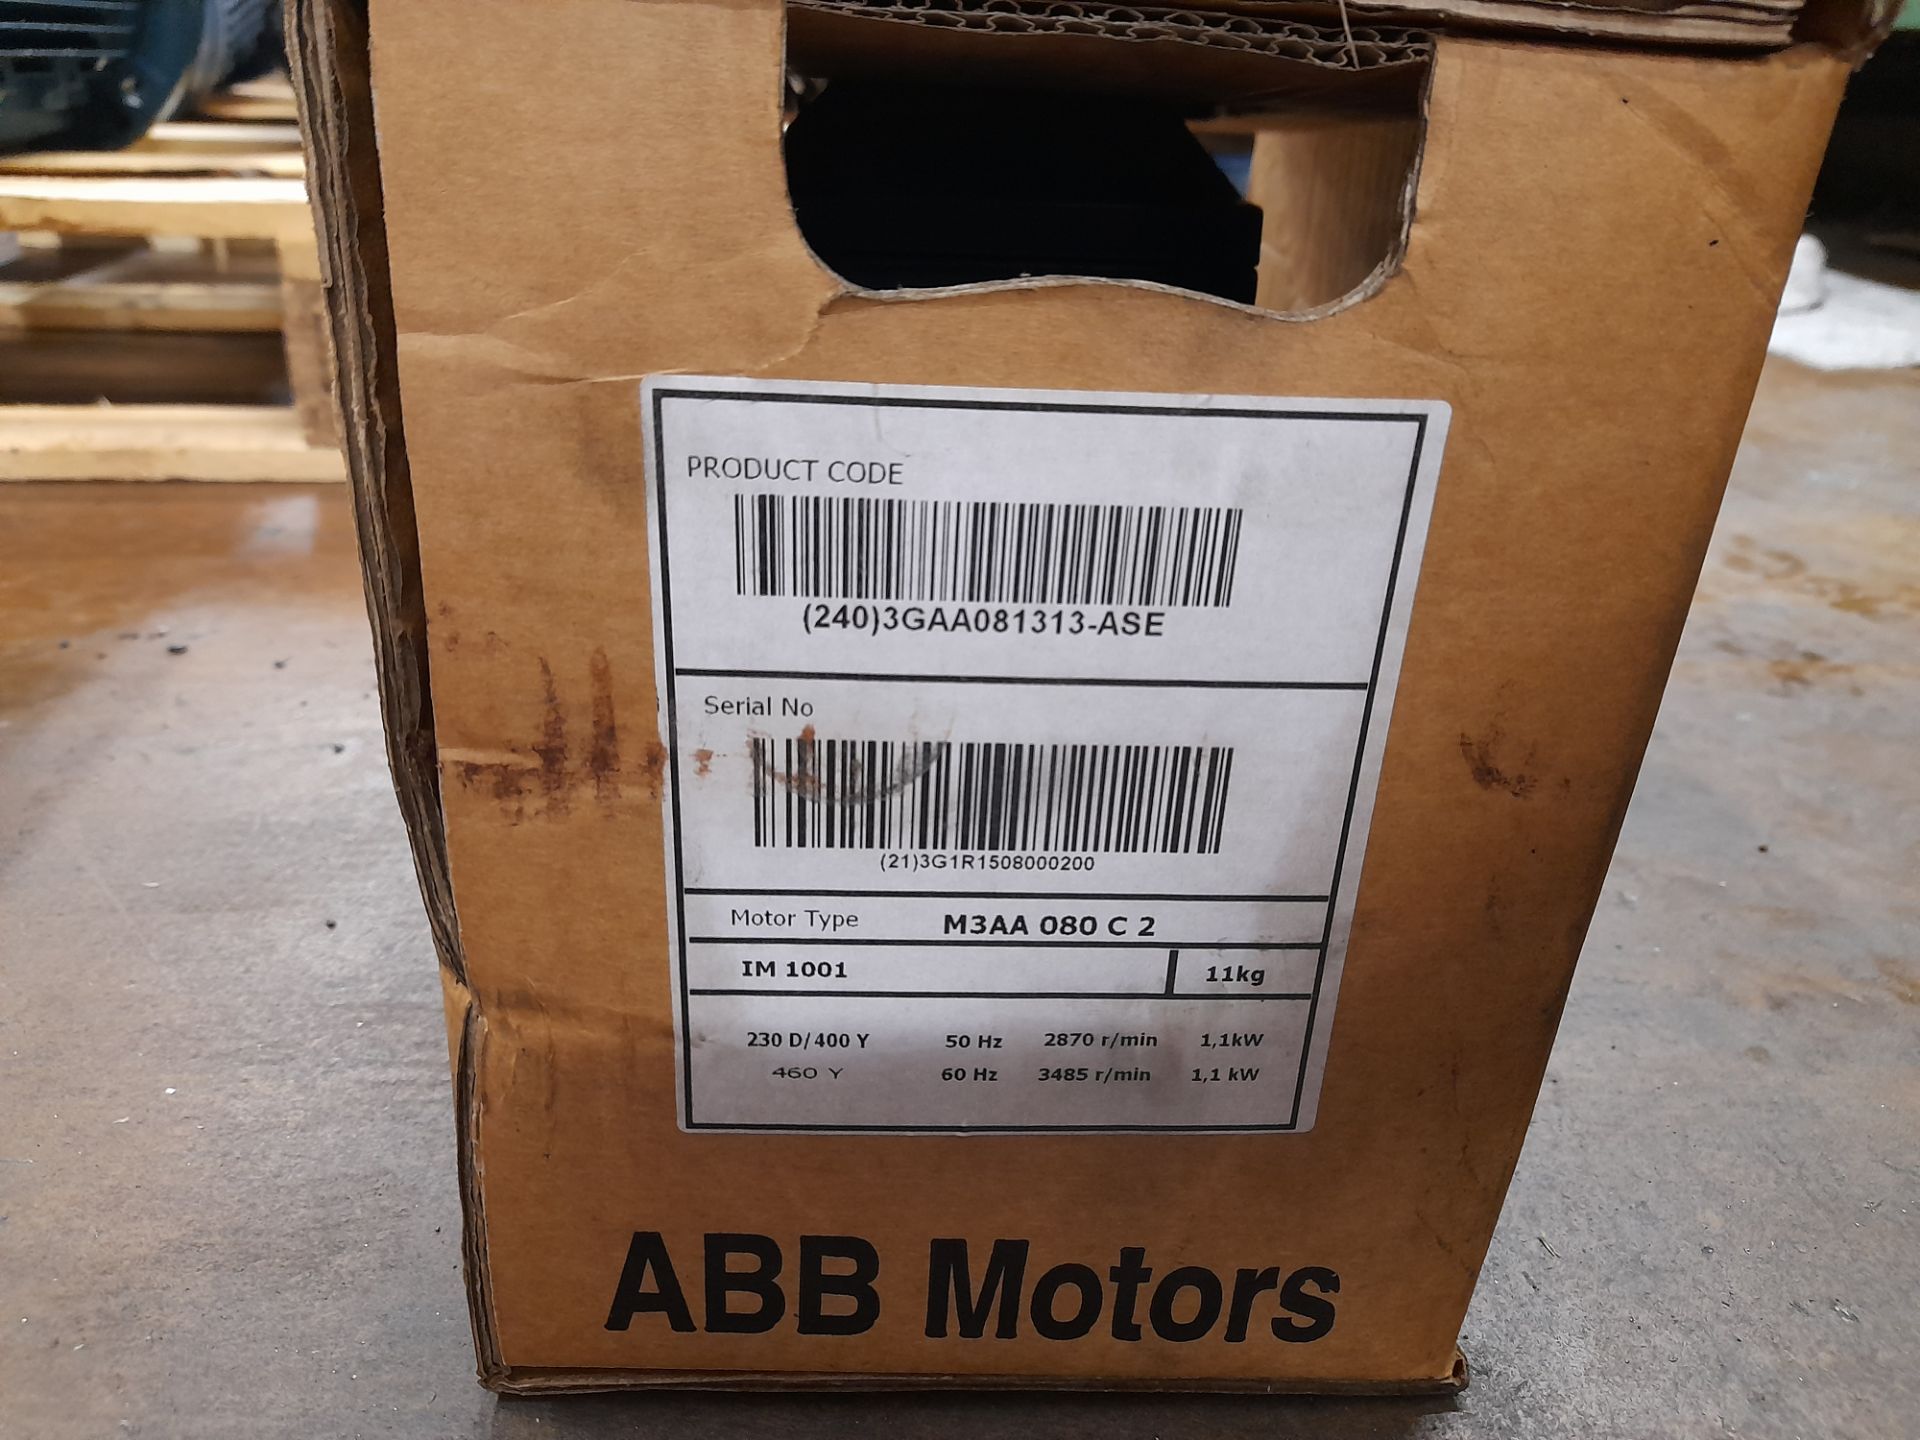 2 x ABB M2AA 080C2 electric motors, with 1 x ABB M3AA 080C2 electric motor (Boxed / unused) - Image 7 of 7